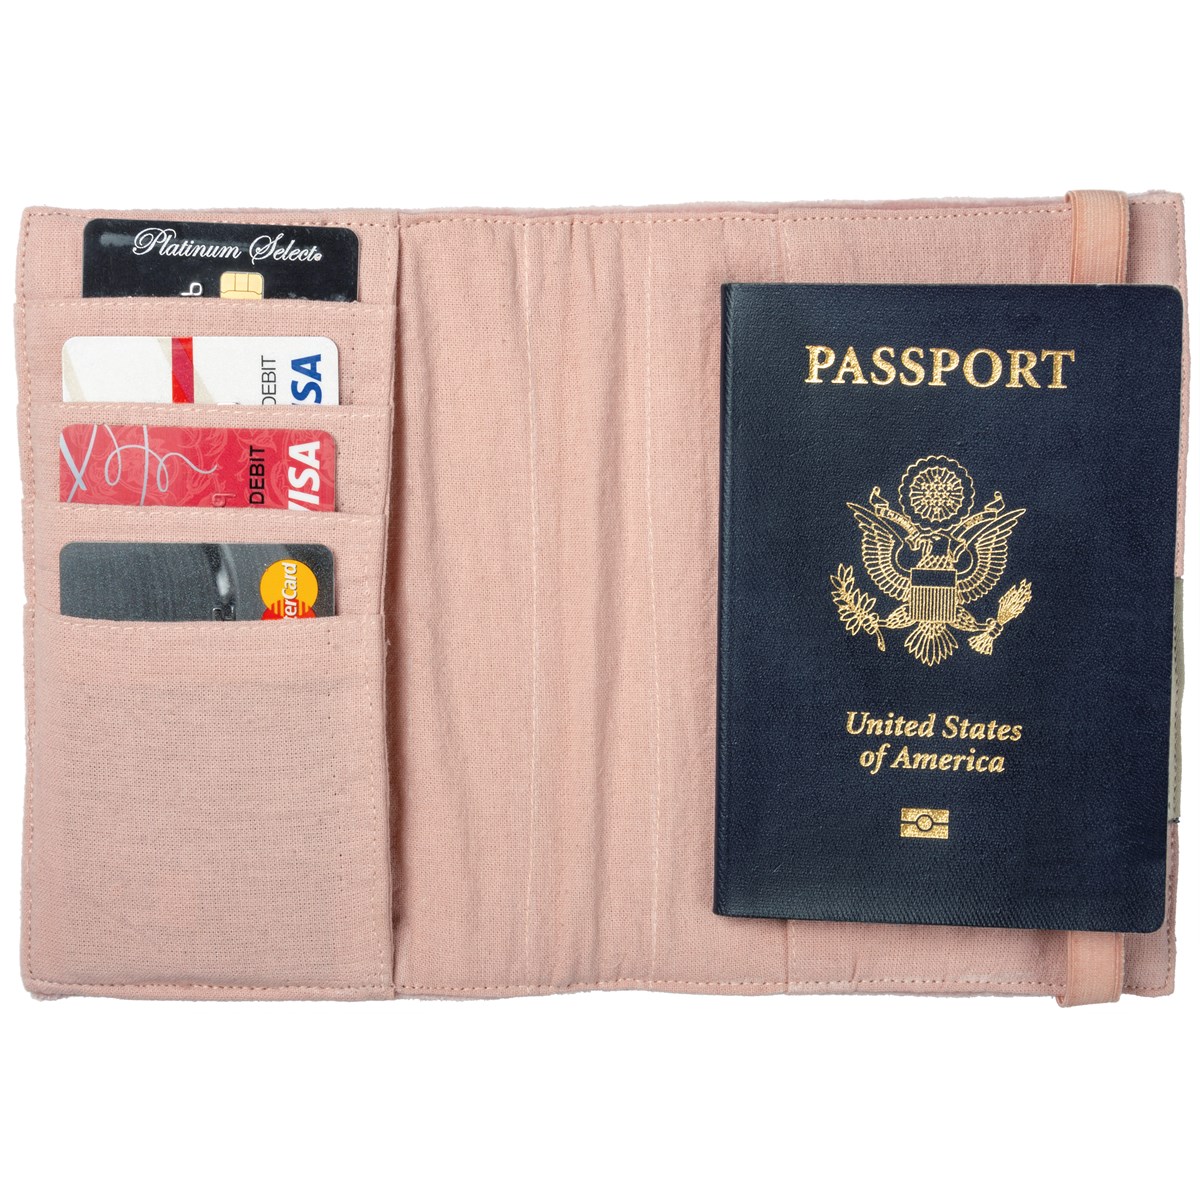 #likeAboss Passport Holder - Velvet